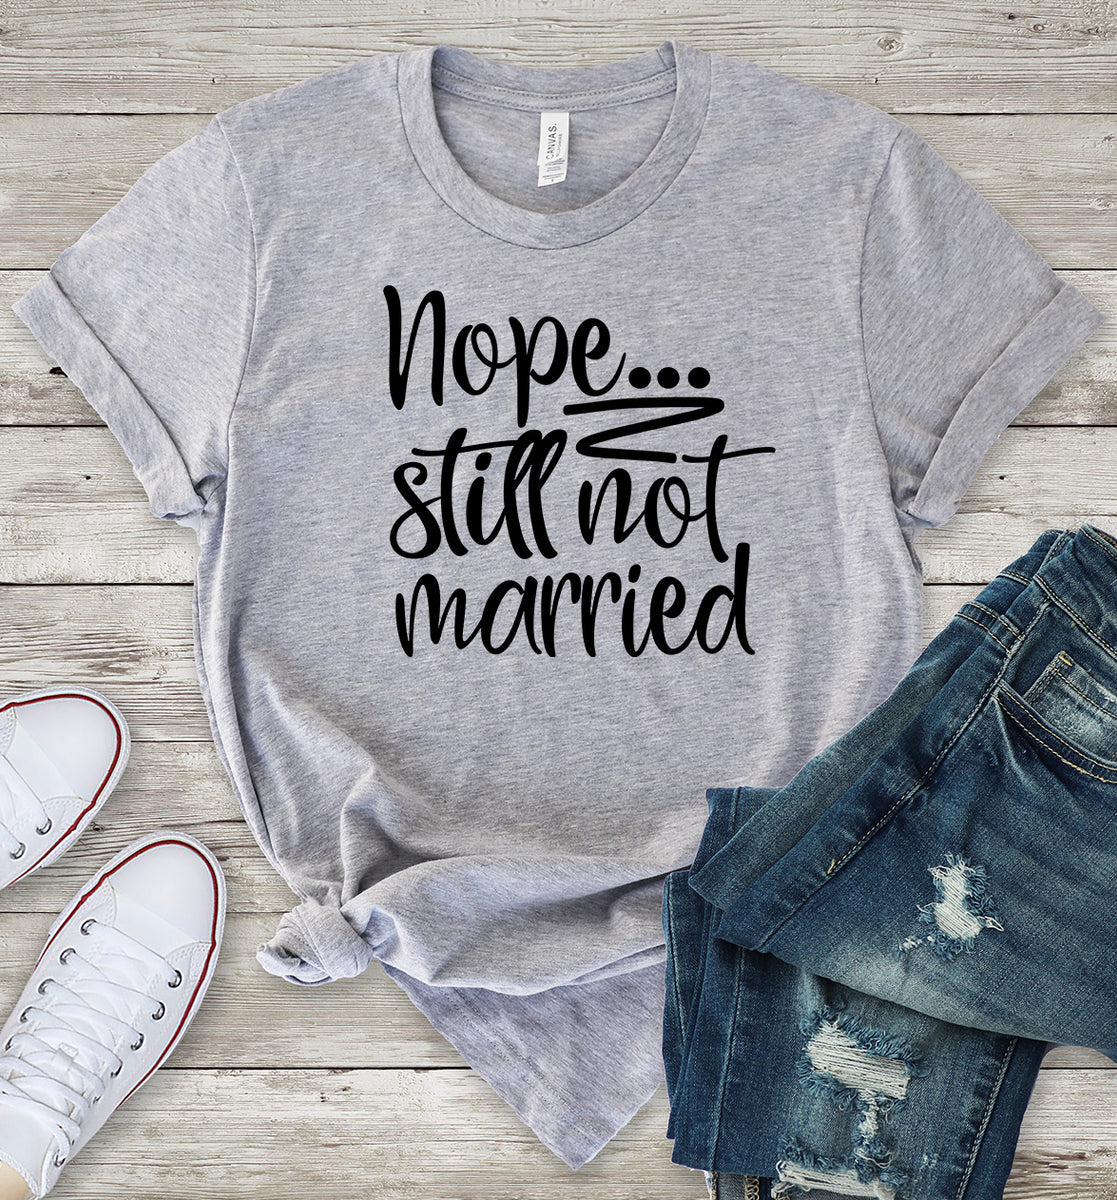 Nope... Still Not Married T-Shirt